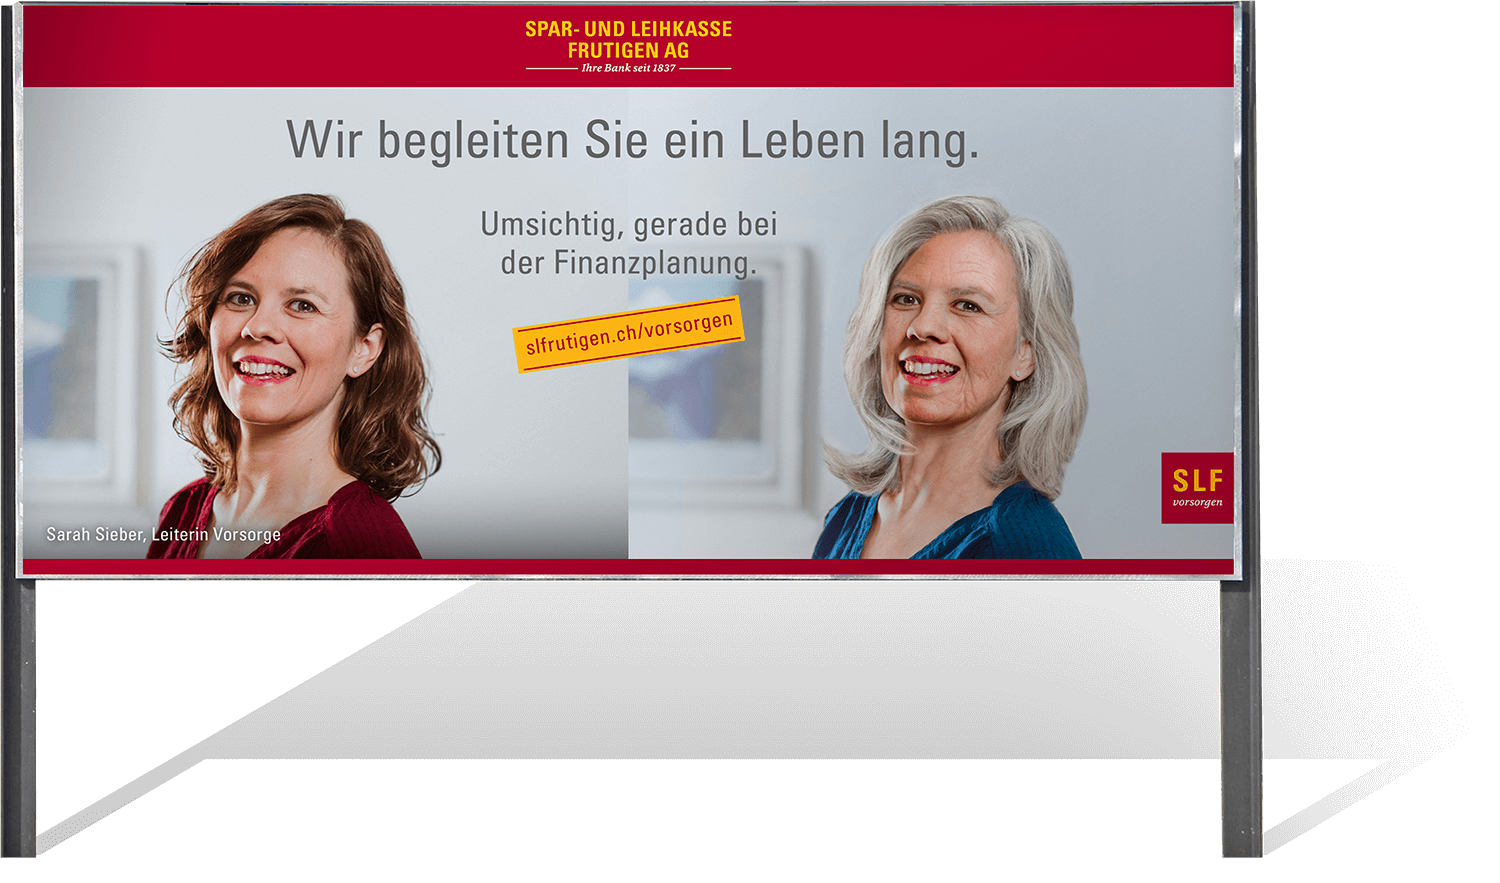 agentur01bern-Spar- und Leihkasse Frutigen AG-finanzieren-plakat